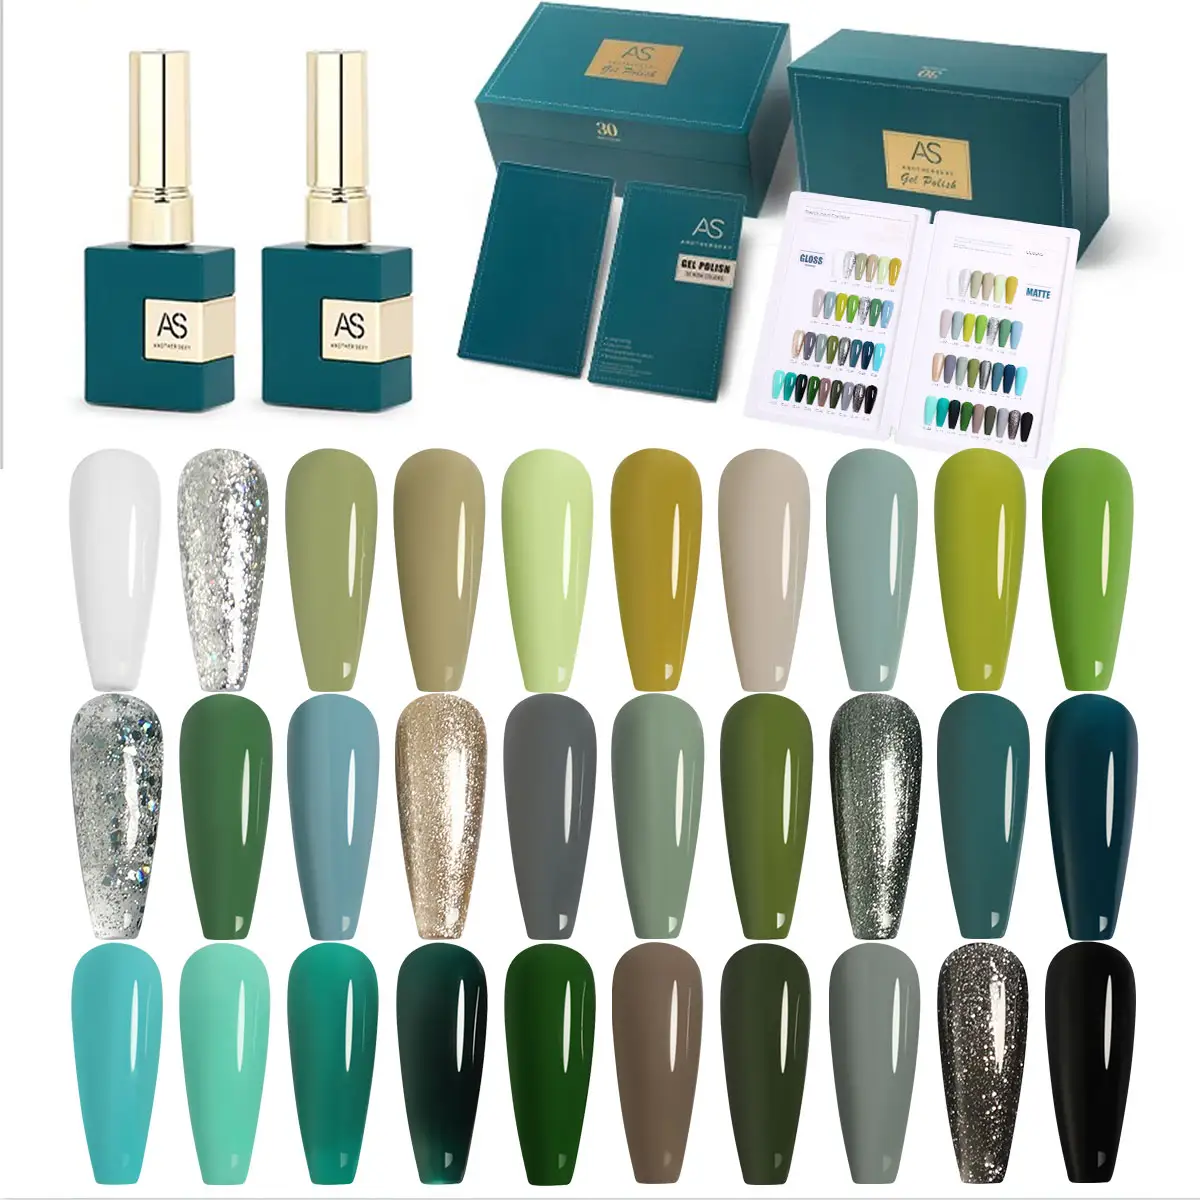 Набор гель-лаков для ногтей Carnival Evergreen, набор из 30 блестящих зеленых лаков для ногтей, удаляемый замачиванием, с лампой авокадо, темно-зеленый лак